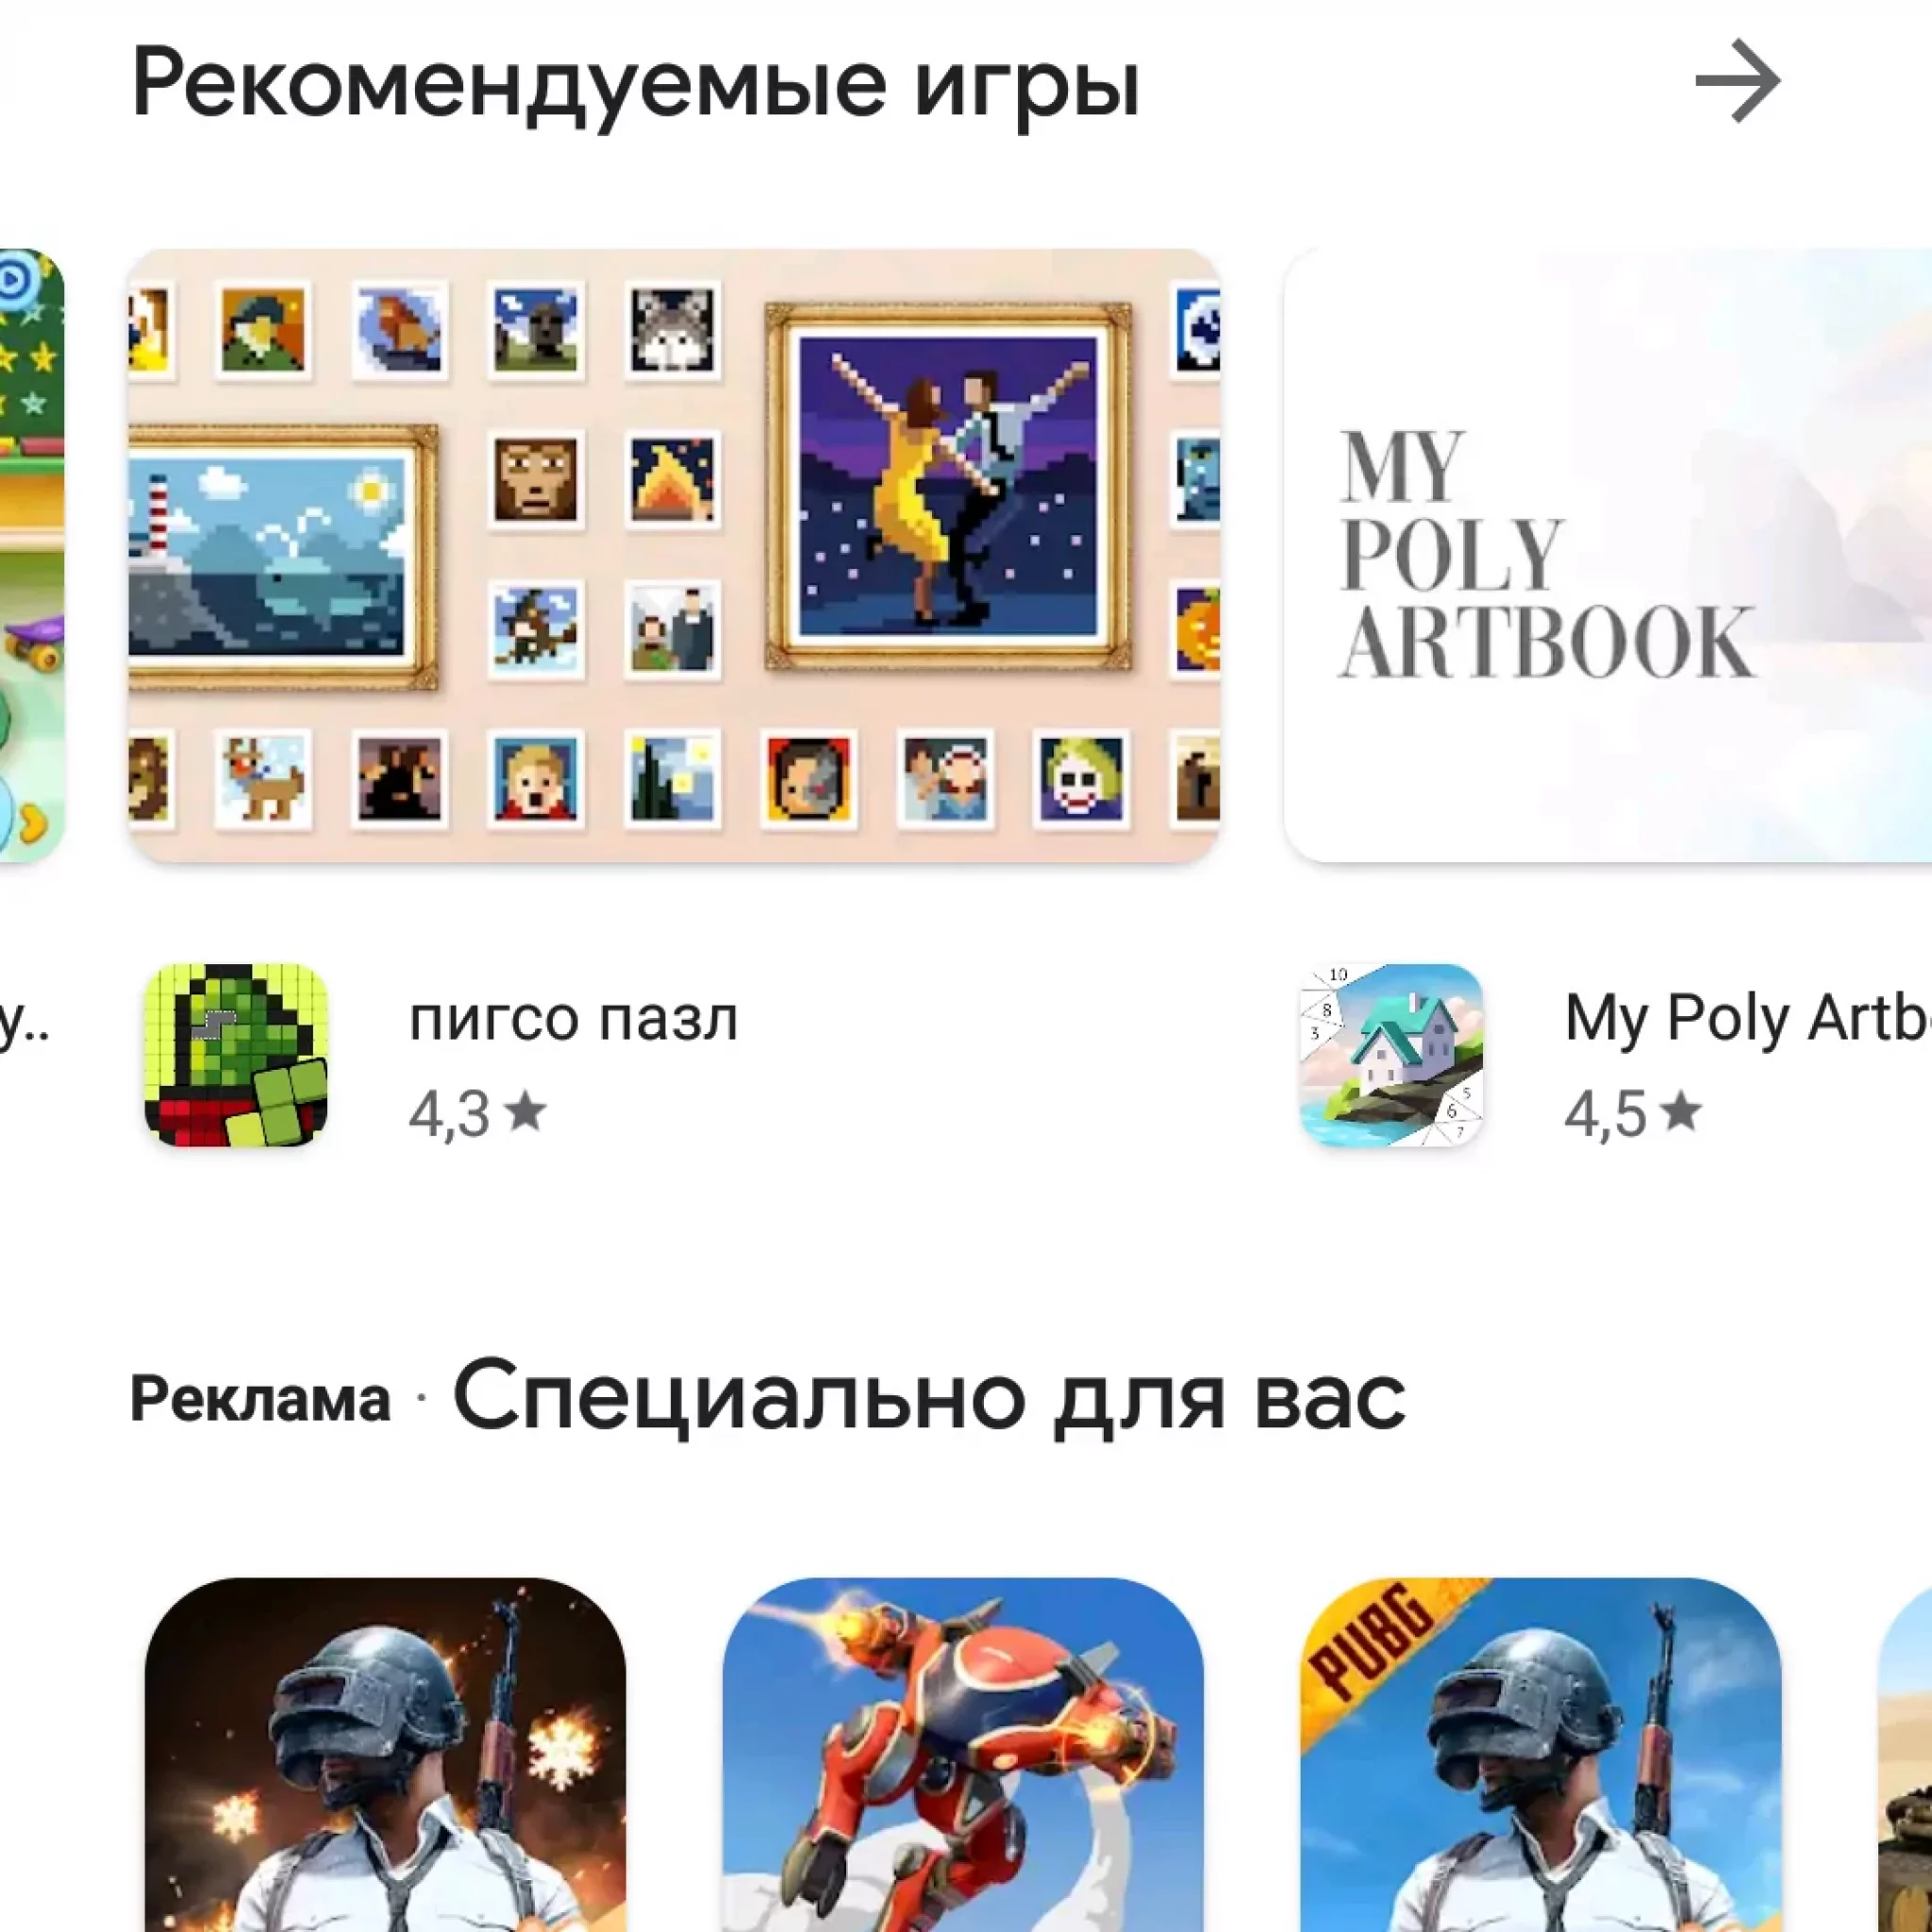 Телеграмм для телефона андроид скачать бесплатно на русском языке фото 85